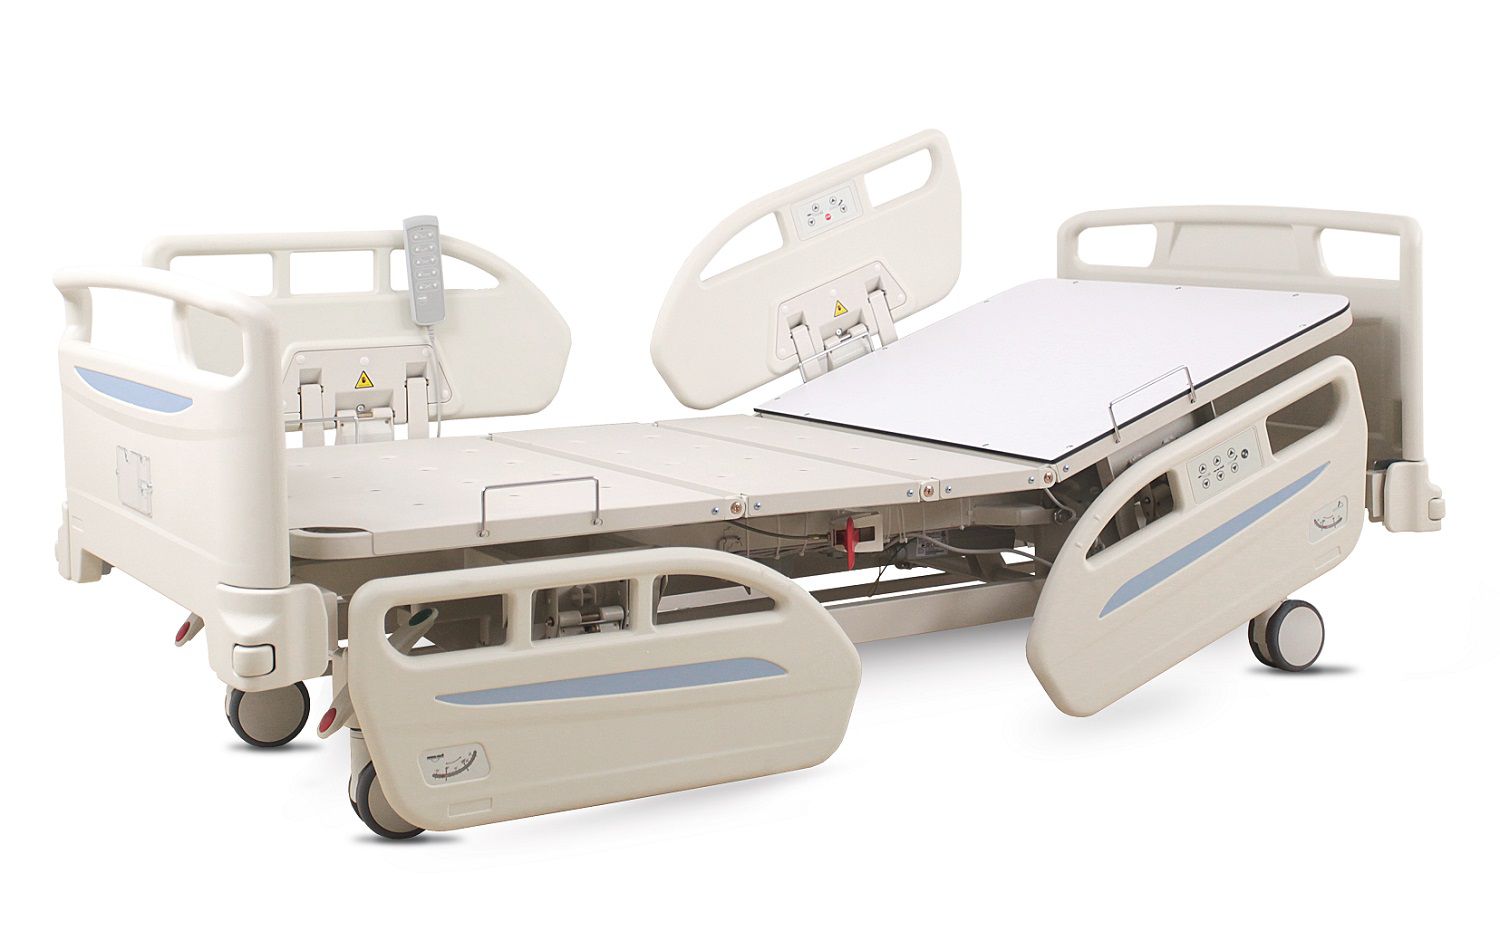  Medical bed BLC 2414 K-5, 5 functions 